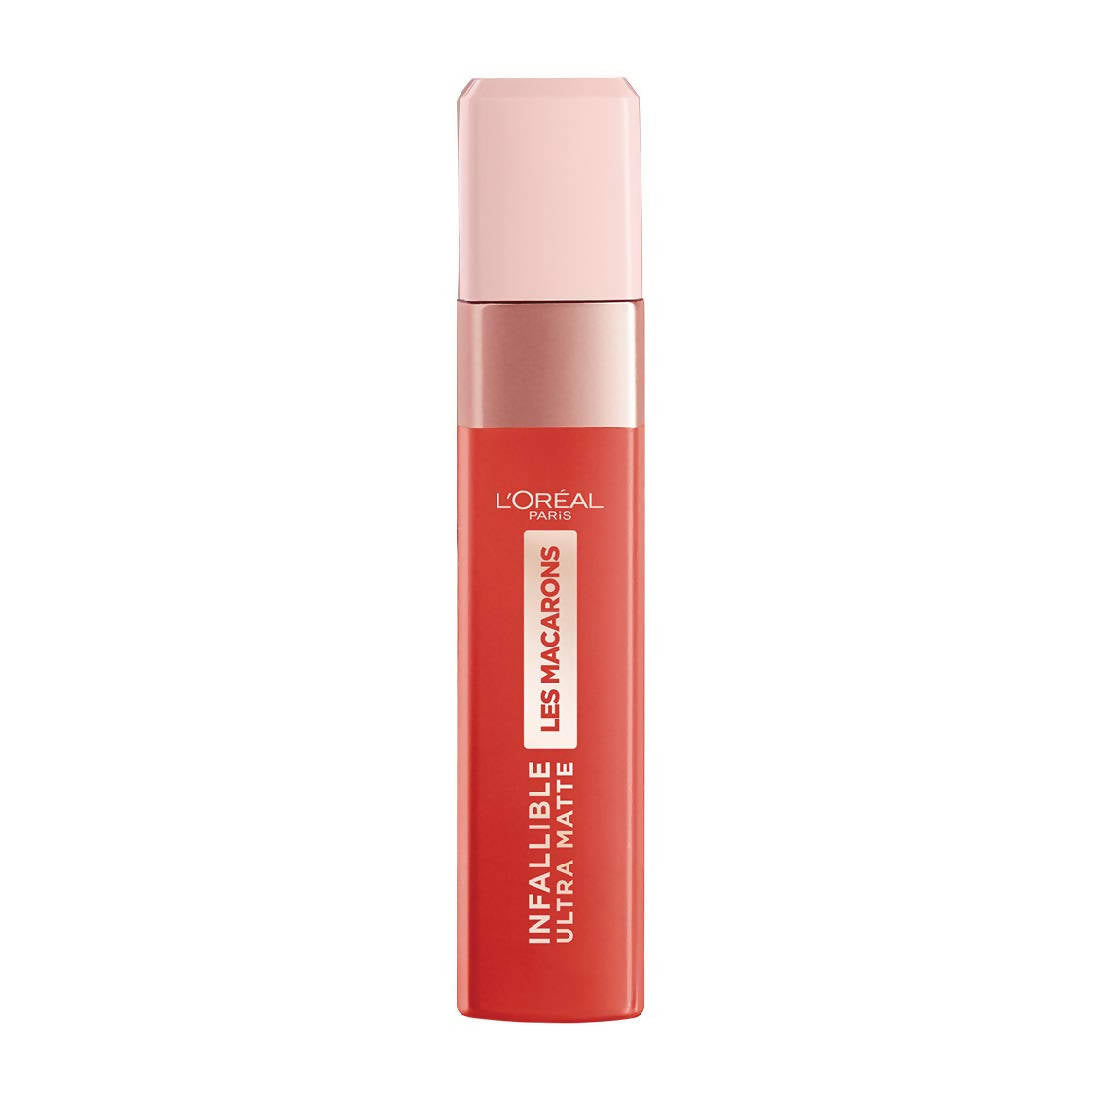 L'Oréal Paris Infallible Ultra Matte Liquid Lipstick Les Macarons - 834 Infinite Spice - Distacart